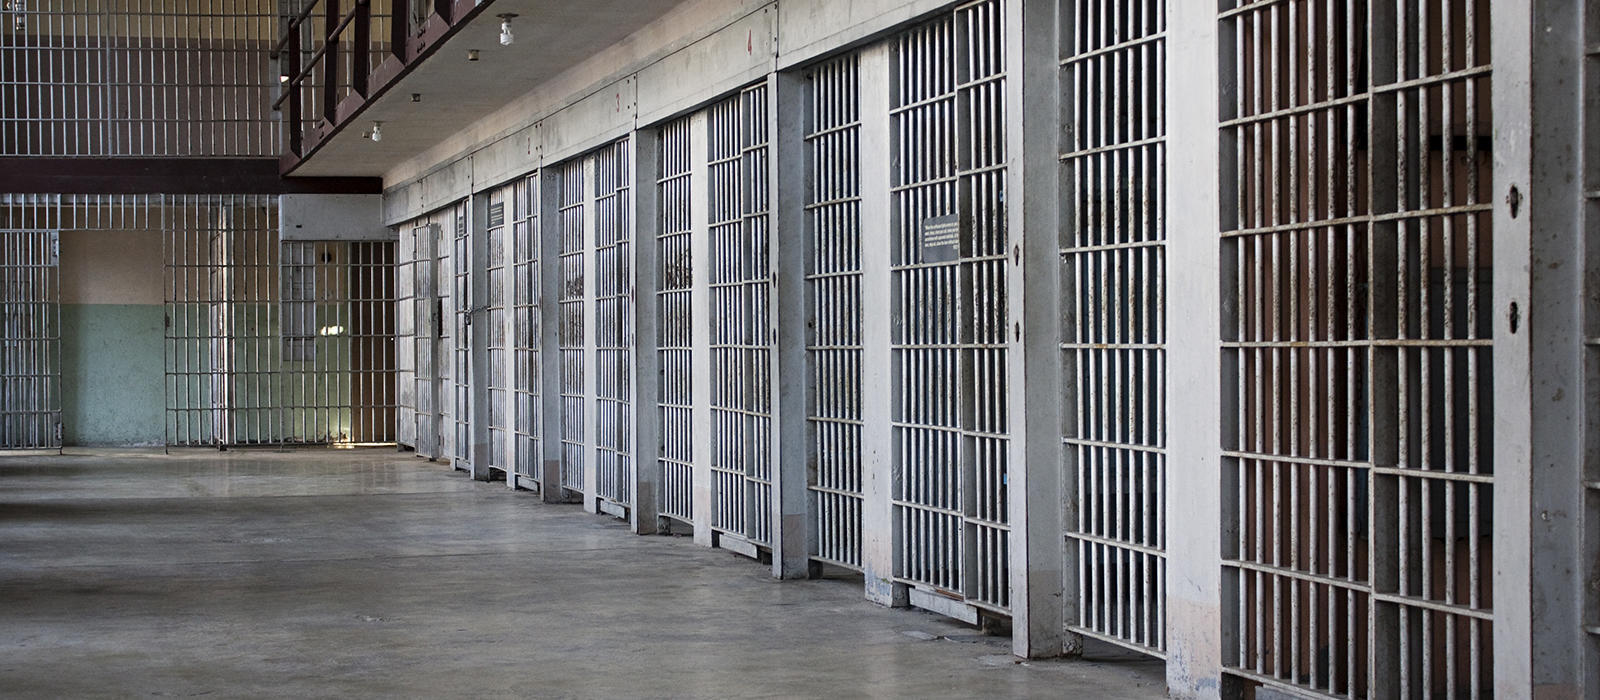 Εικόνα διάλυσης στον Κορυδαλλό: Μόλις δυο σωφρονιστικοί υπάλληλοι για συνολικά 450 κρατούμενους!